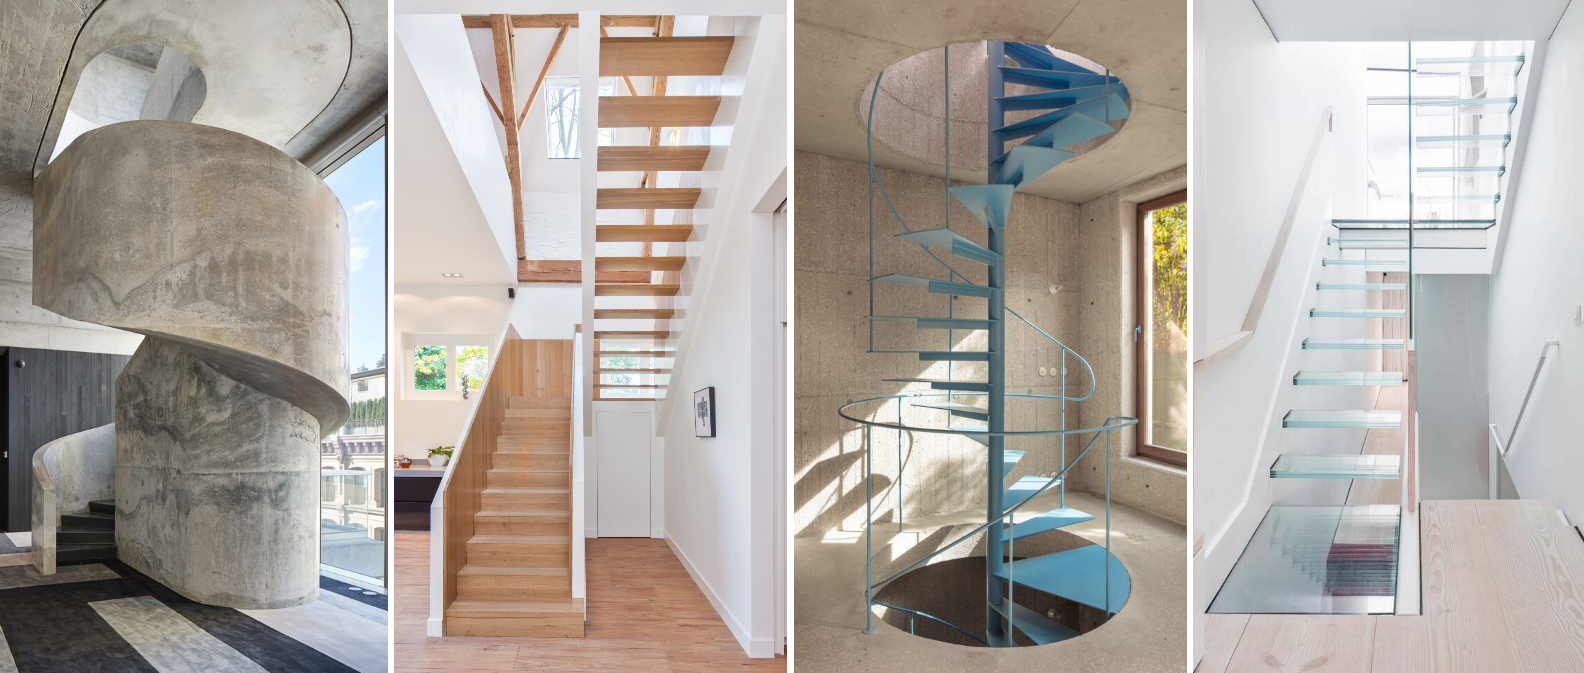 混凝土、木材、钢铁和玻璃：如何选择楼梯材质？|ART-Arrakis | 建筑室内设计的创新与灵感